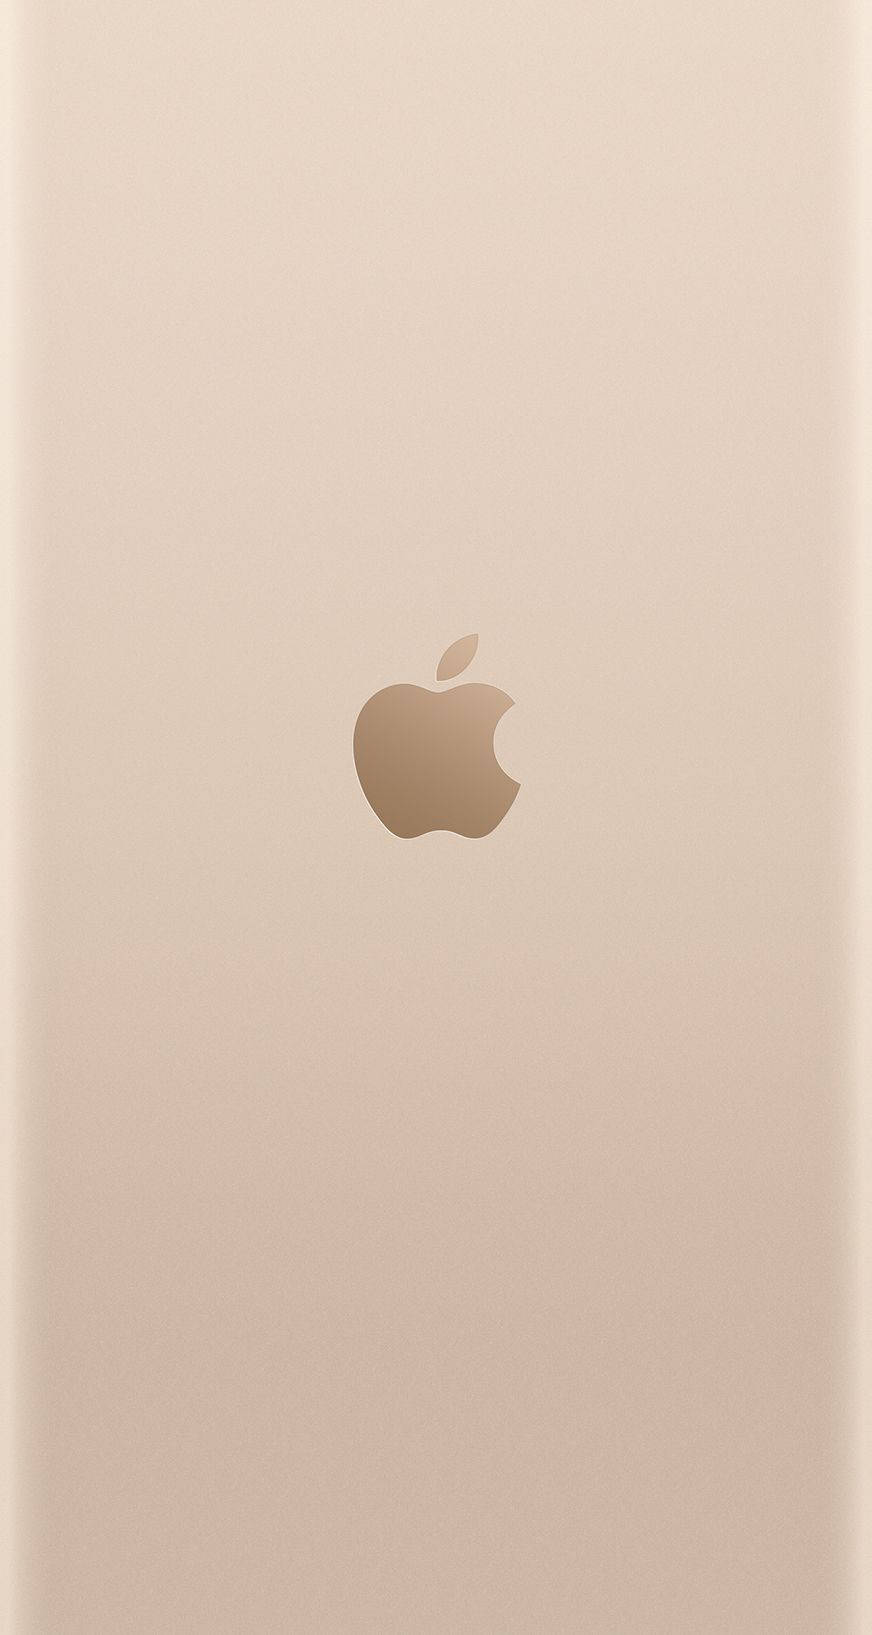 Etbillede Af En Apple Iphone 6s I Guld. Wallpaper